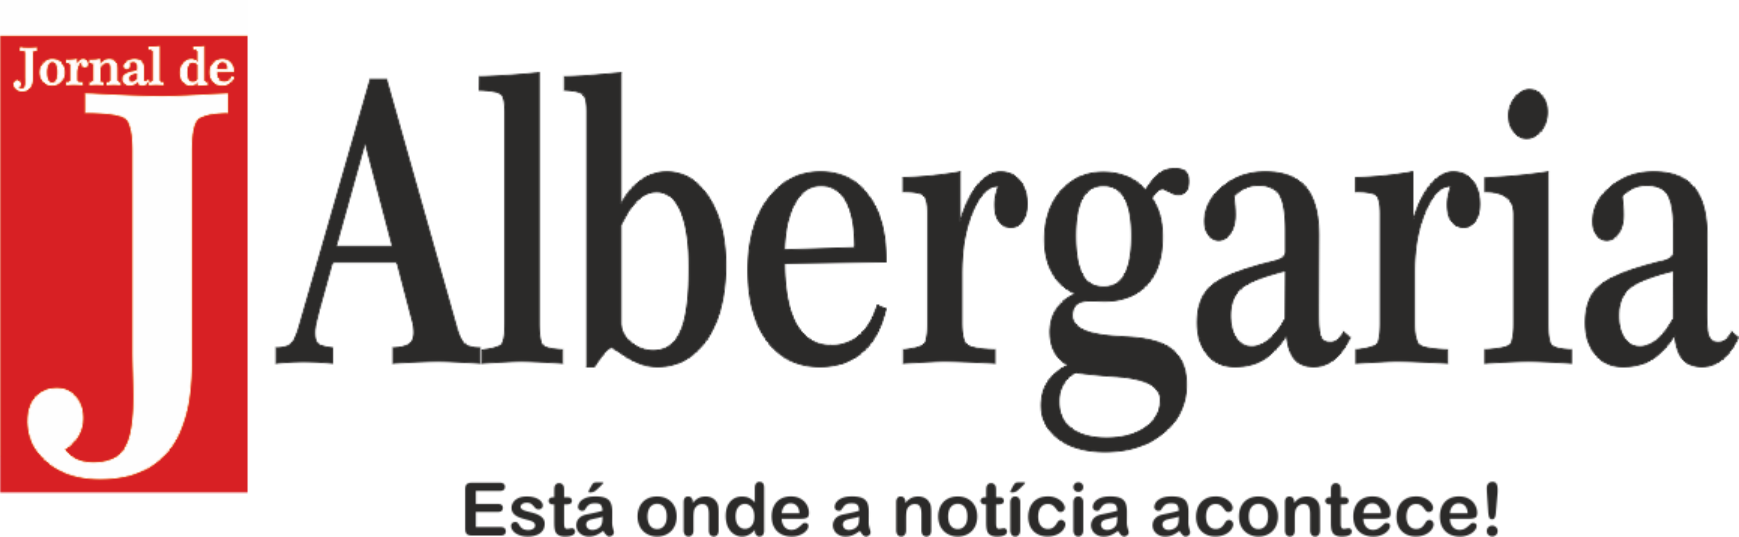 Jornal de Albergaria - Está onde a notícia acontece!